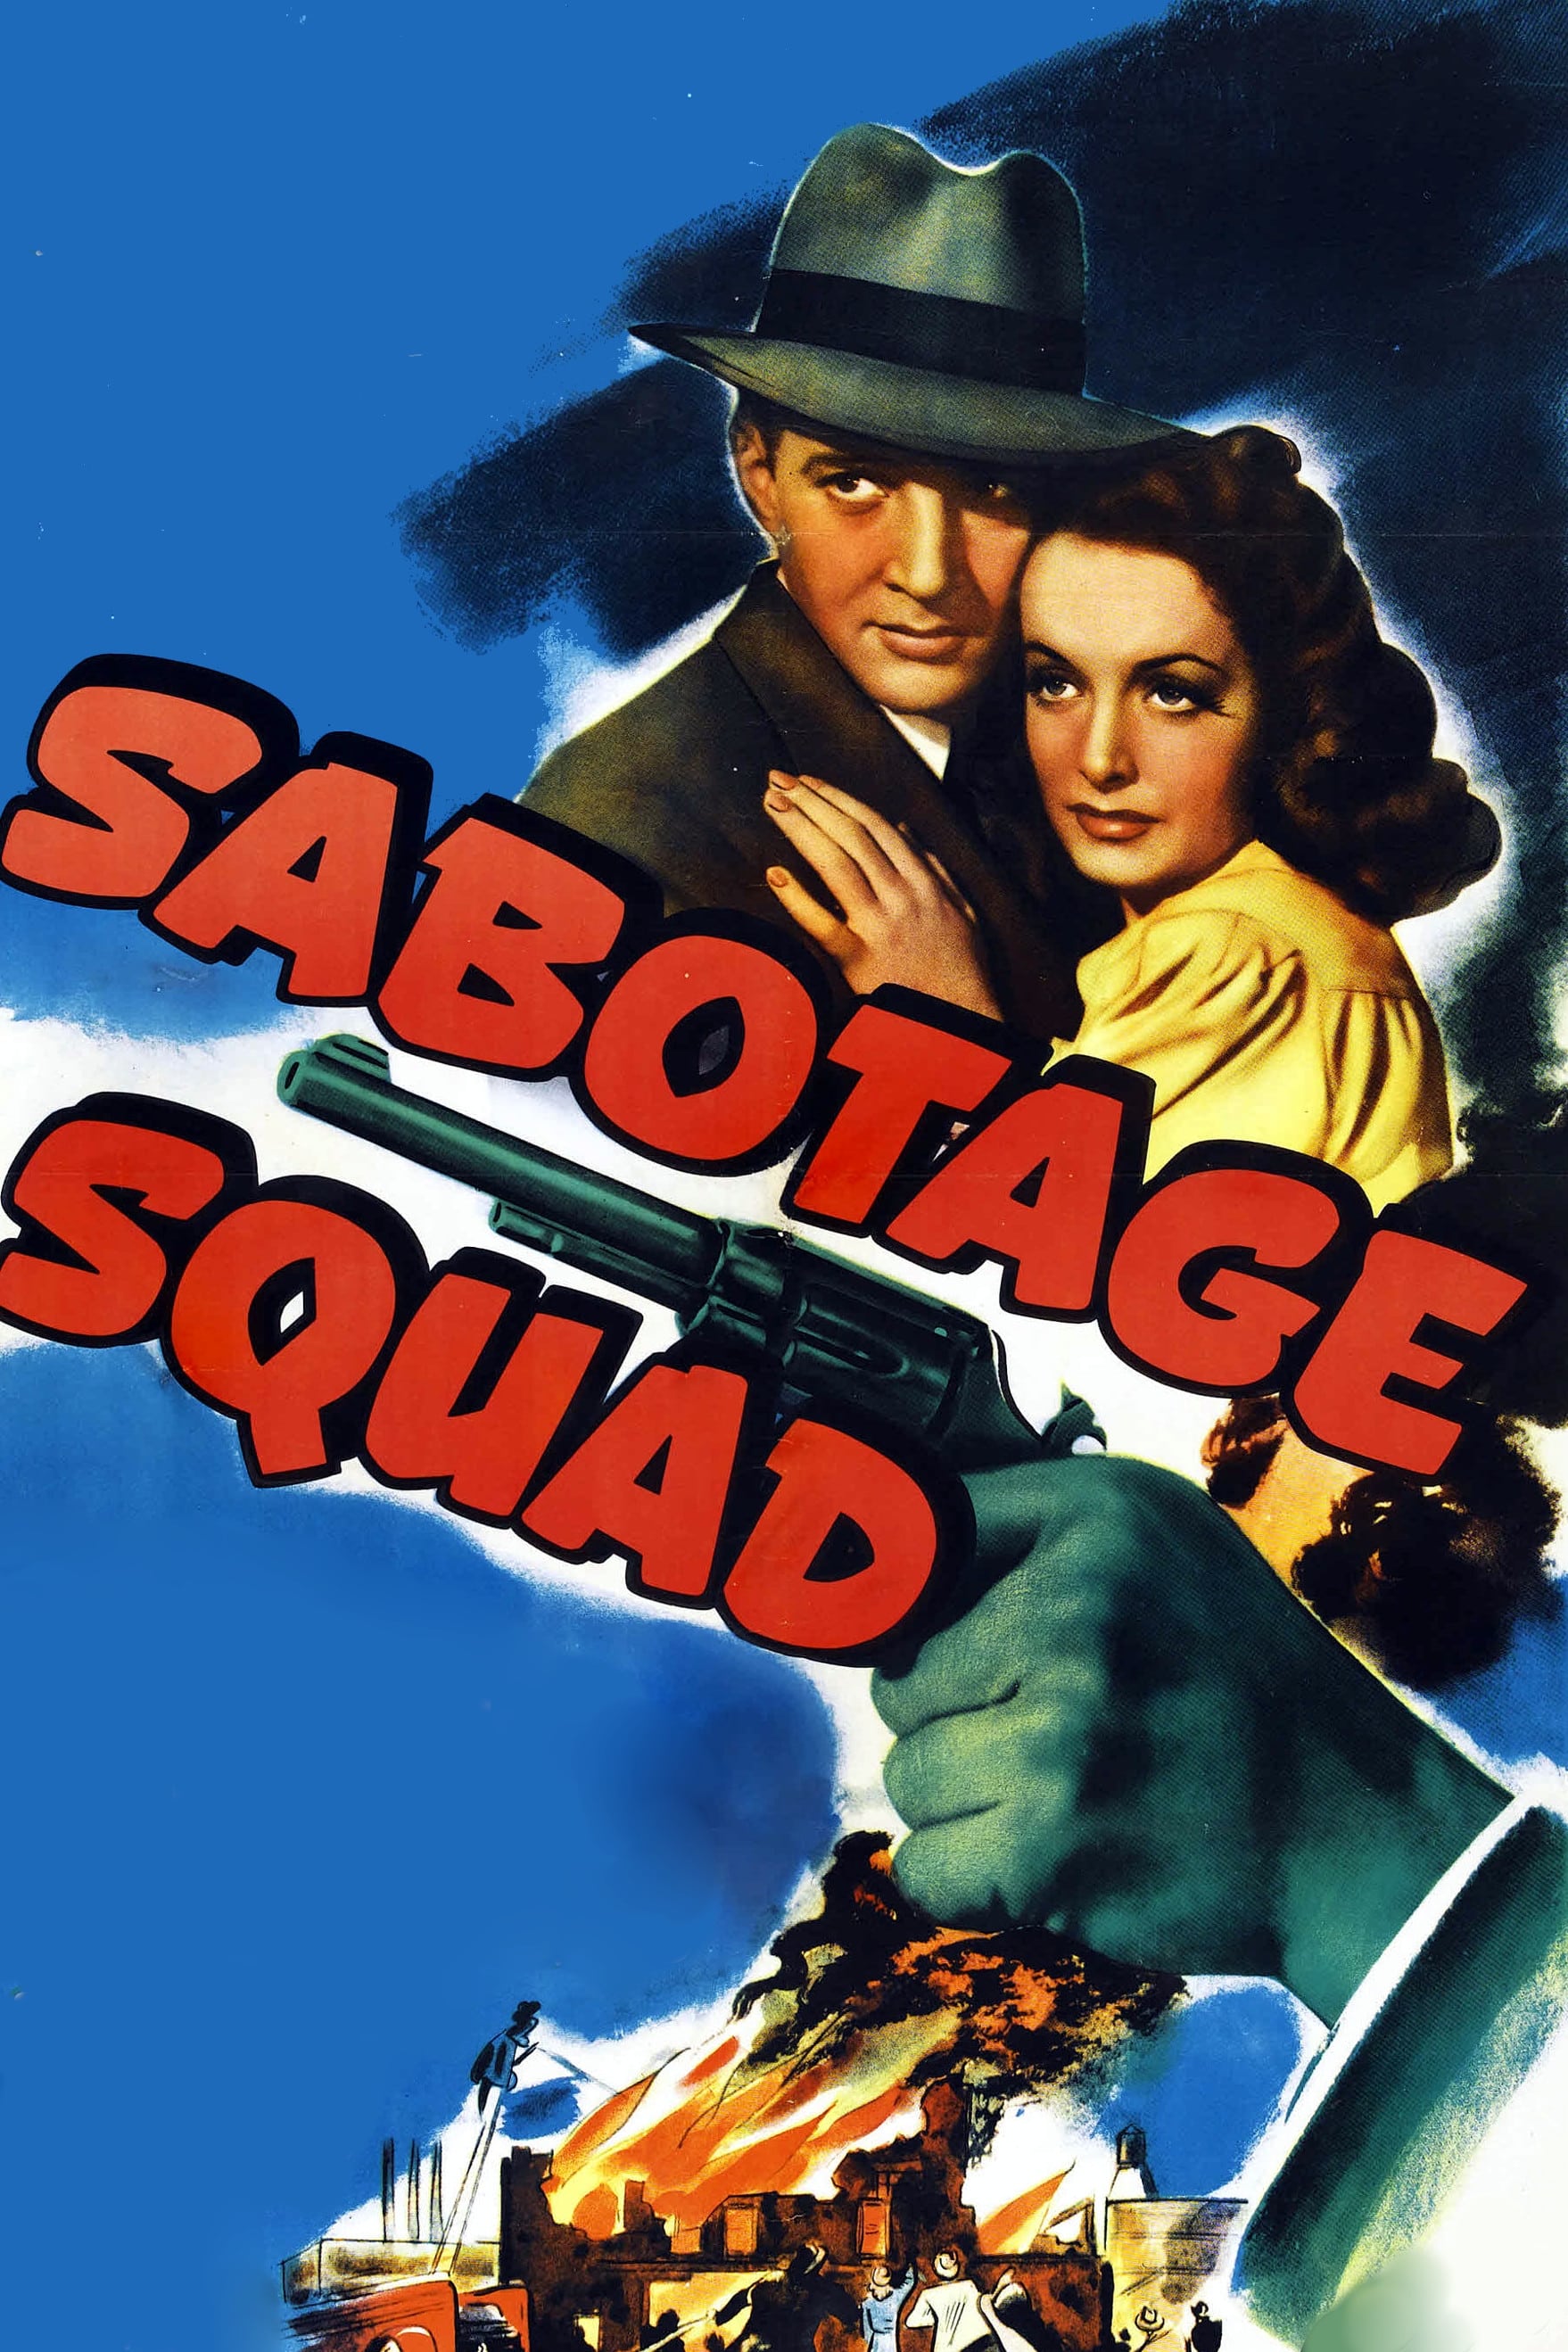 Sabotage Squad (1942)